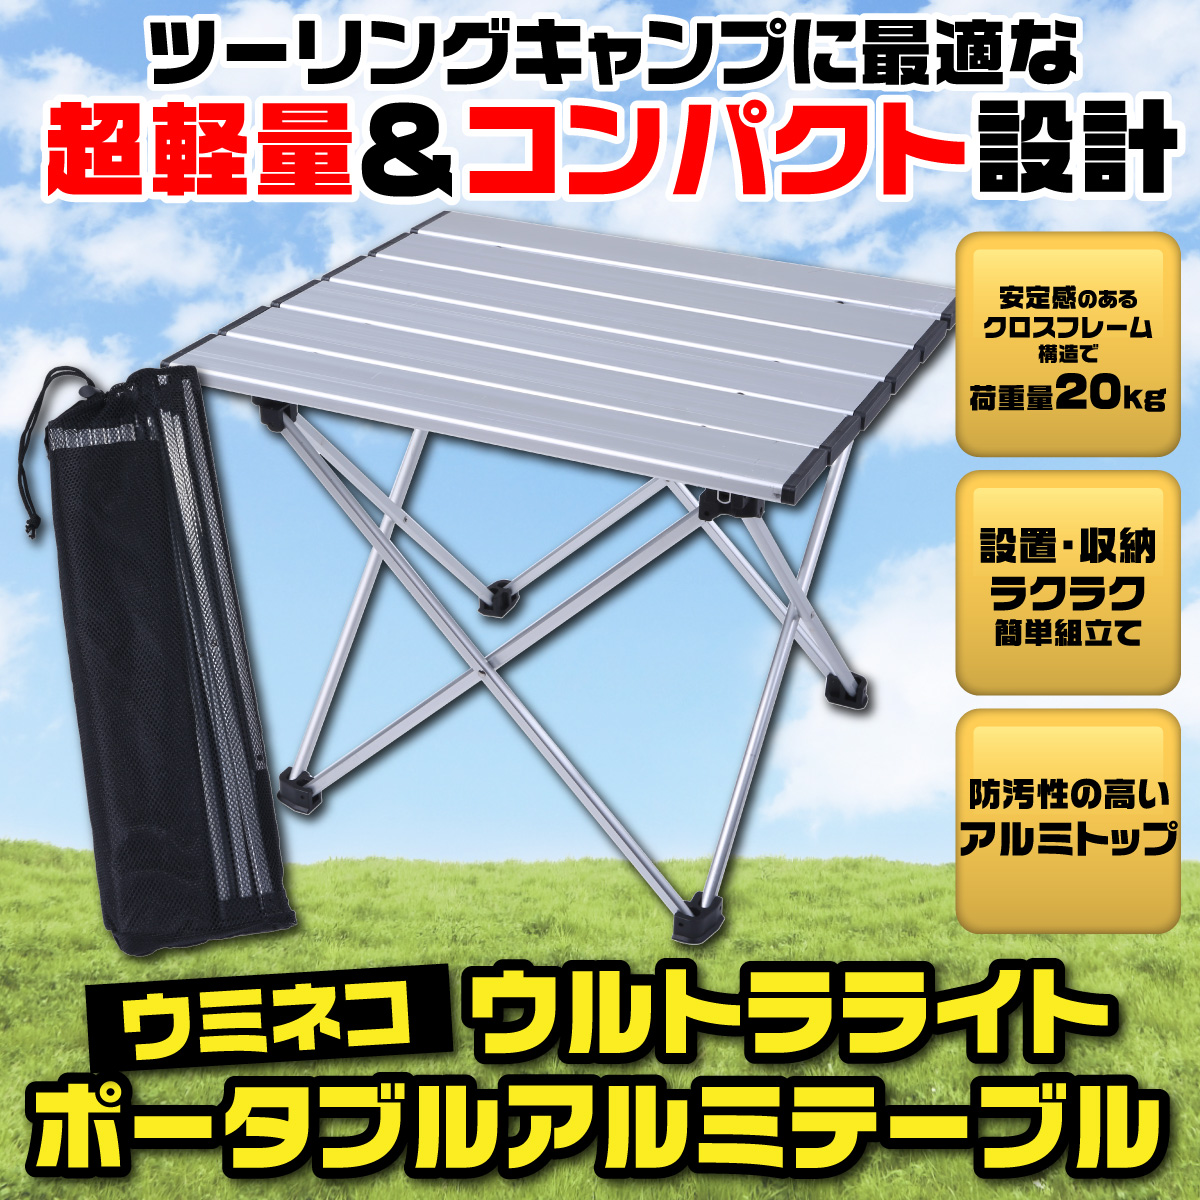 コンパクト テーブル ツーリング ソロ キャンプ 小さい Sサイズ ポータブル 軽量 アウトドア 折りたたみ バイク アルミ 耐熱 ウミネコ